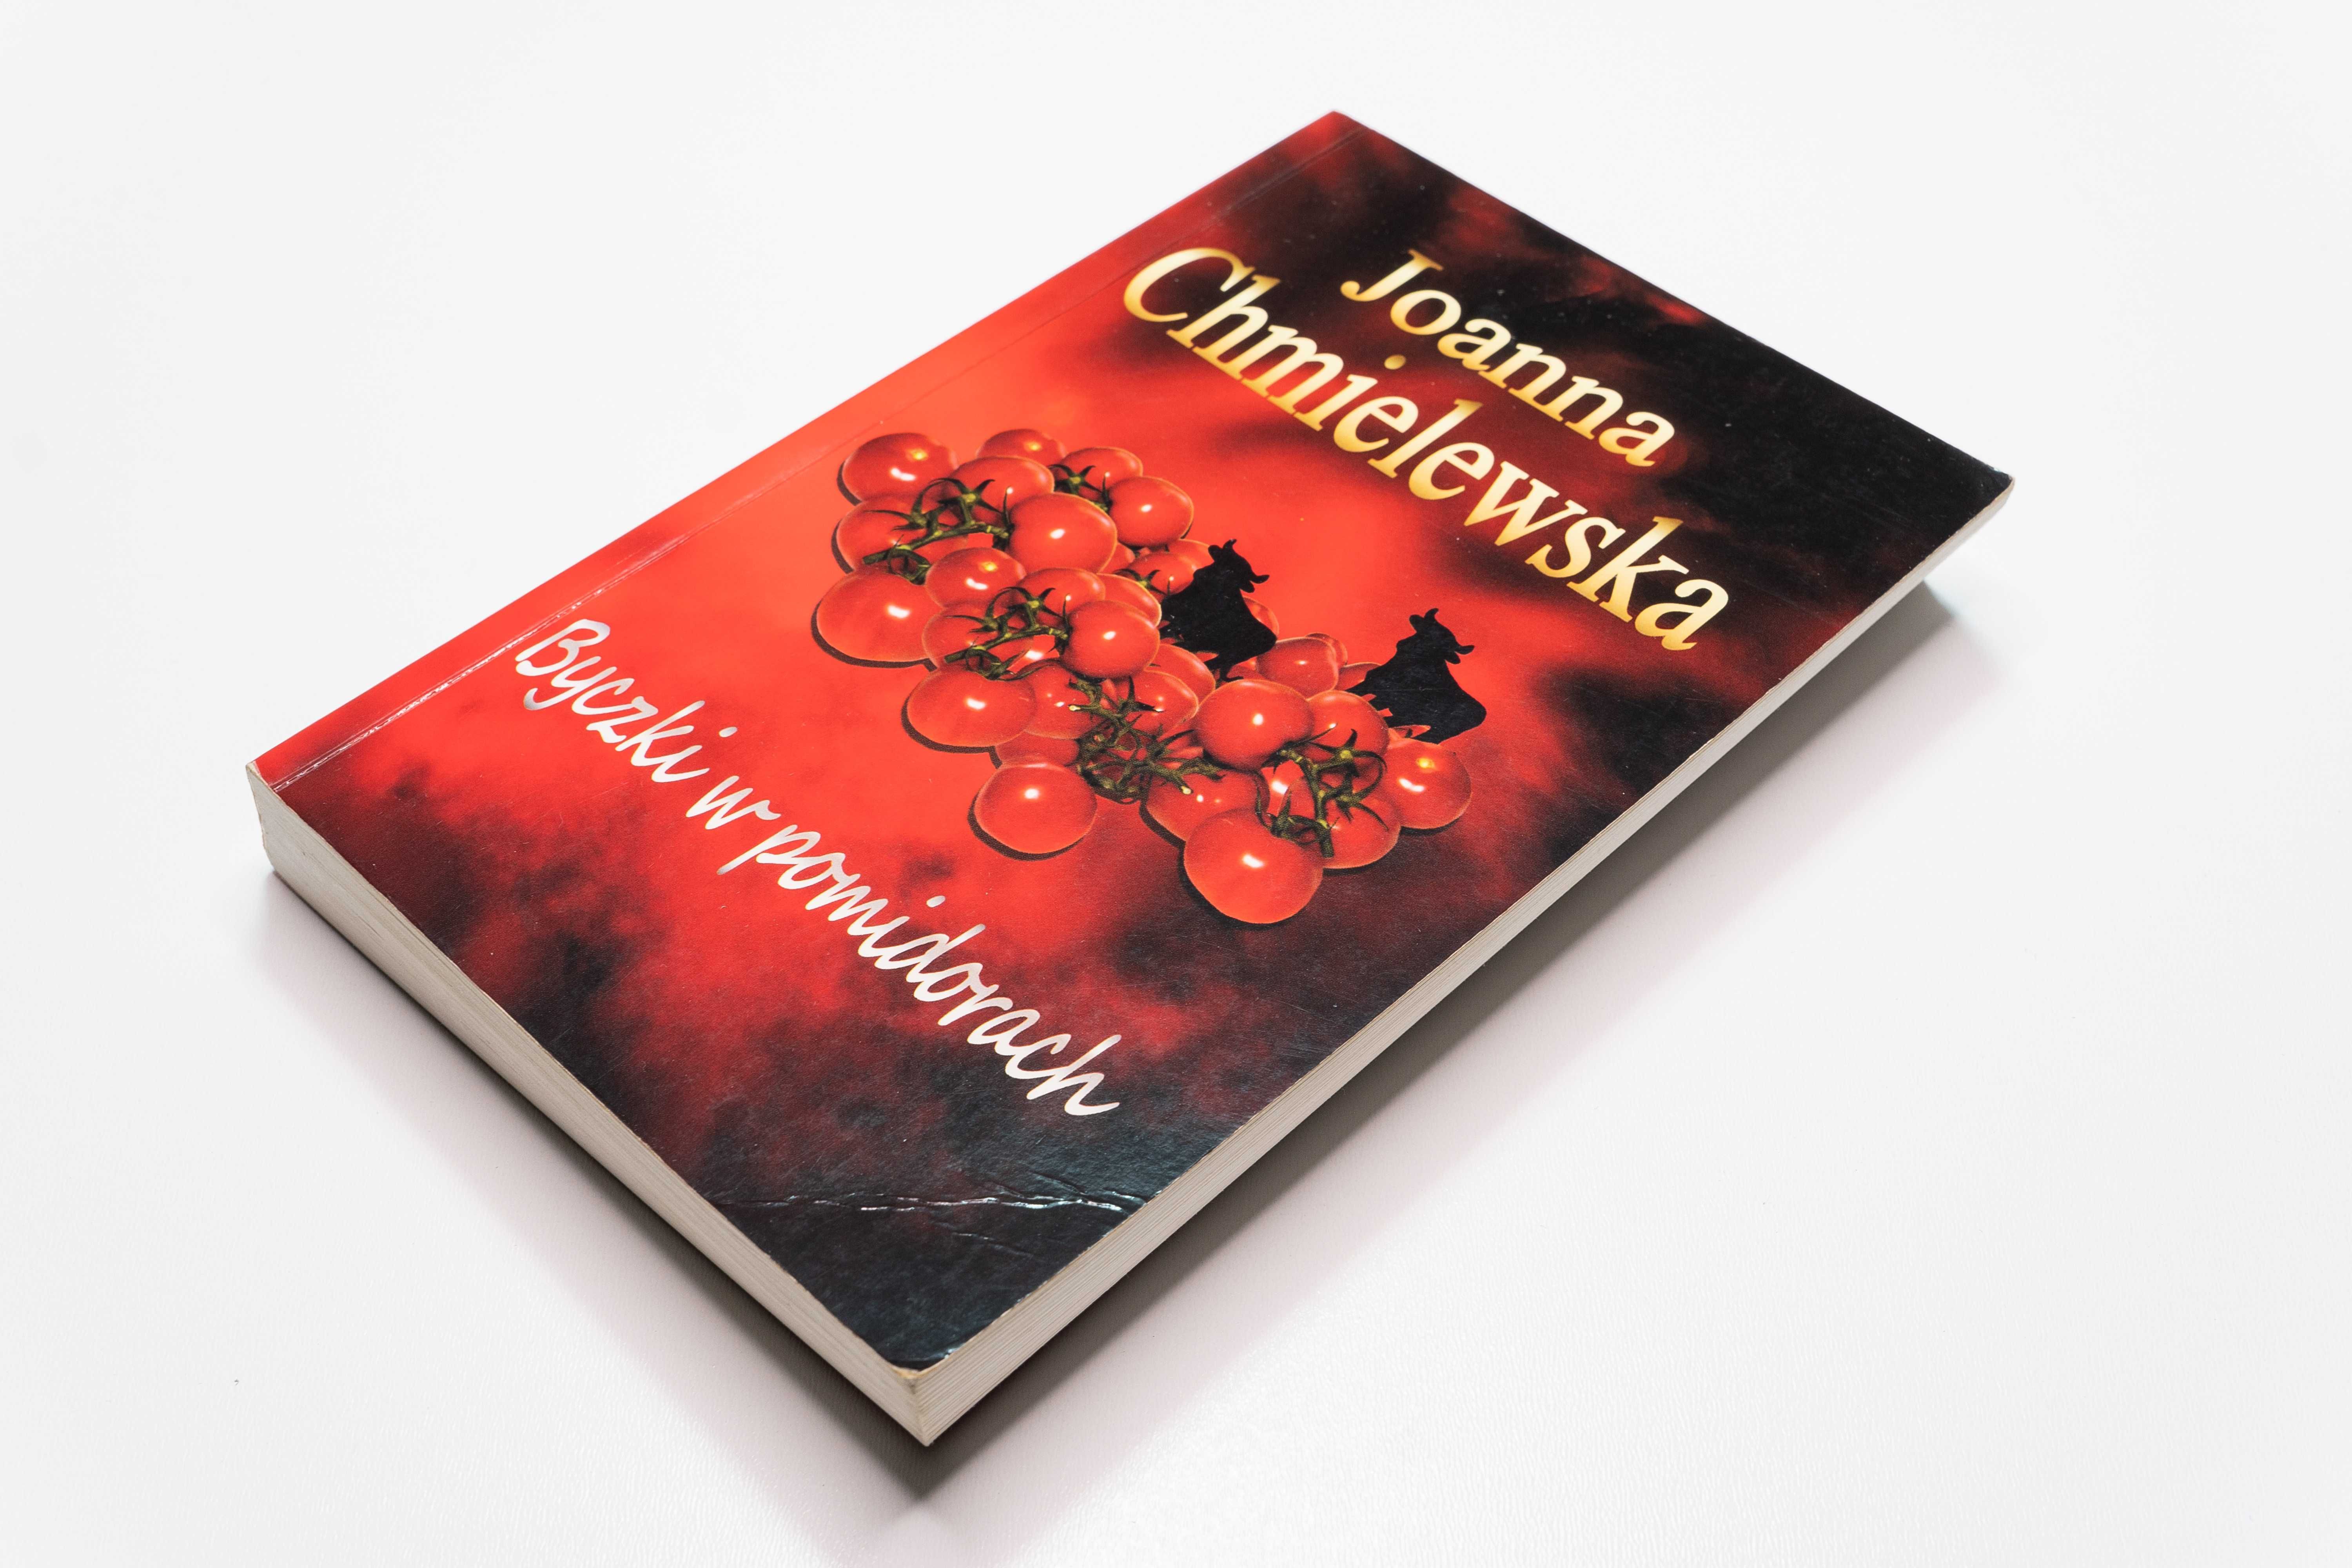 Książka Joanna Chmielewska Byczki w pomidorach - miękka oprawa - 2010